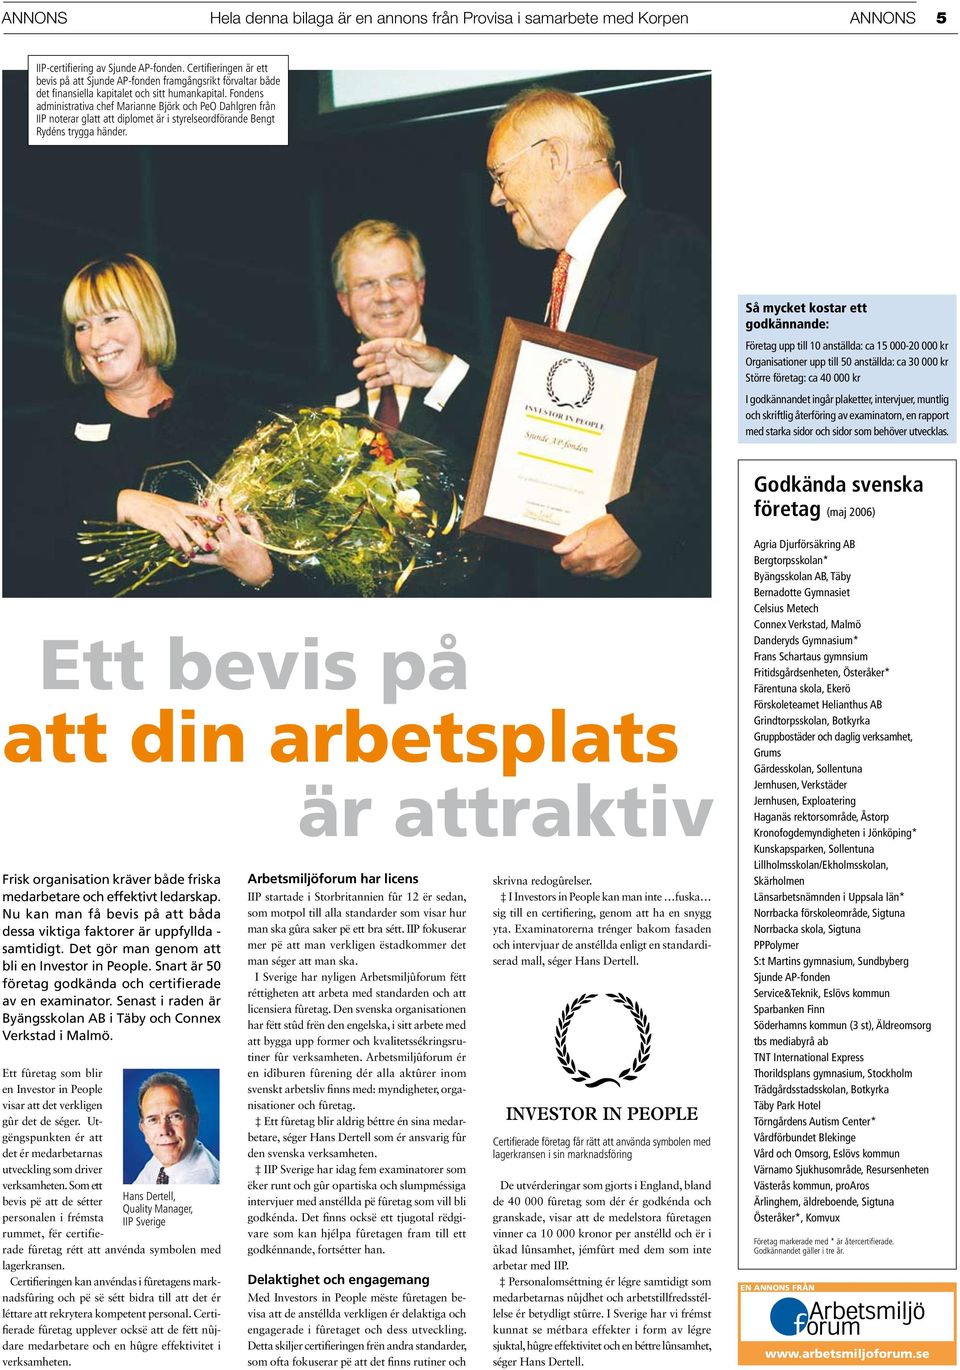 Fondens administrativa chef Marianne Björk och PeO Dahlgren från IIP noterar glatt att diplomet är i styrelseordförande Bengt Rydéns trygga händer.